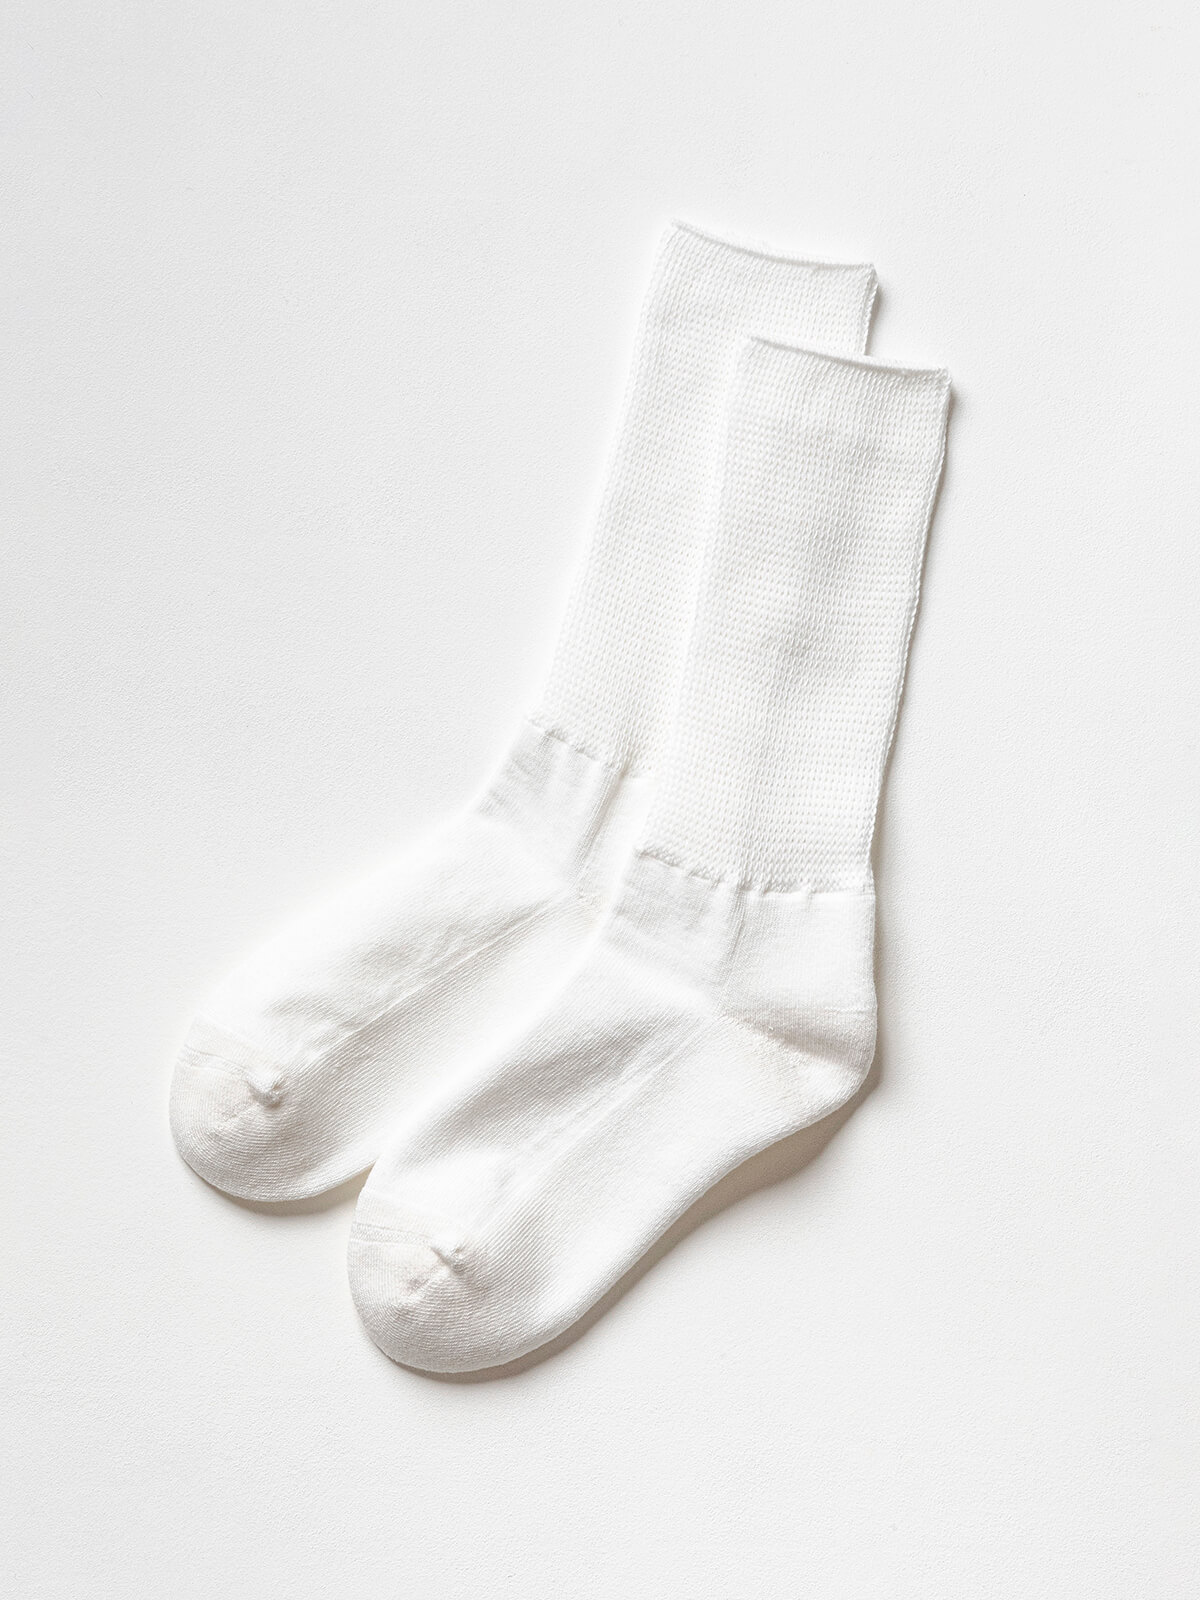 当たりつきギフト専用靴下のLUCKY SOCKS（ラッキーソックス）のRelax Pile Socks（リラックスパイルソックス）のオフホワイト